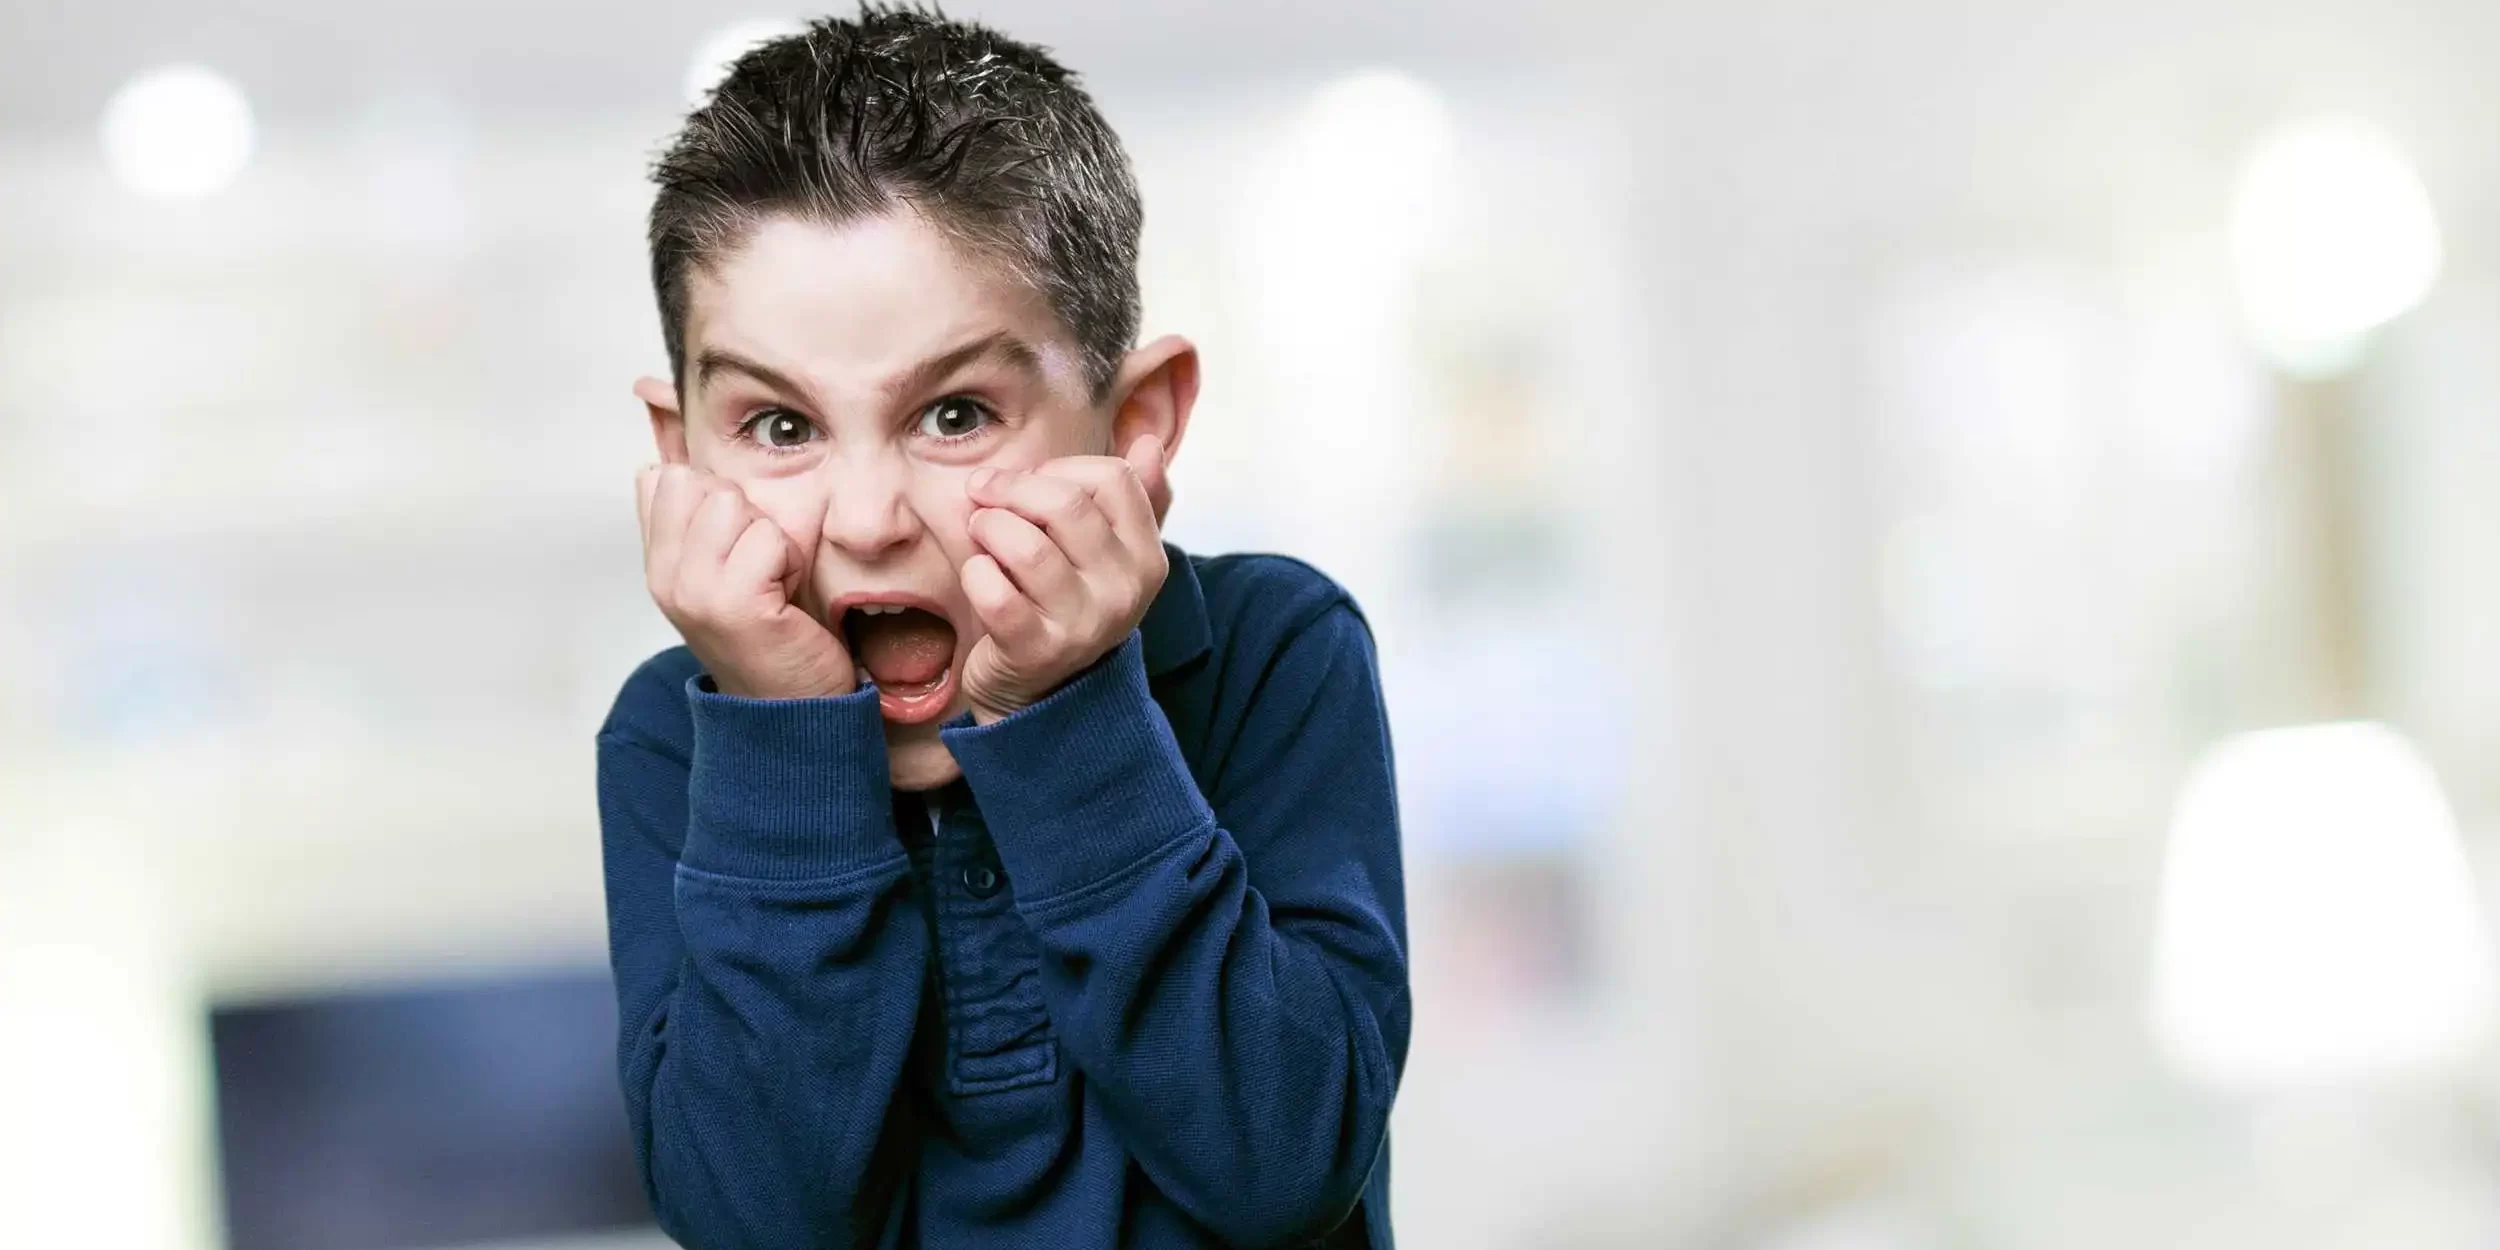  اضطراب تقلبات المزاج التخريبية عند الأطفال